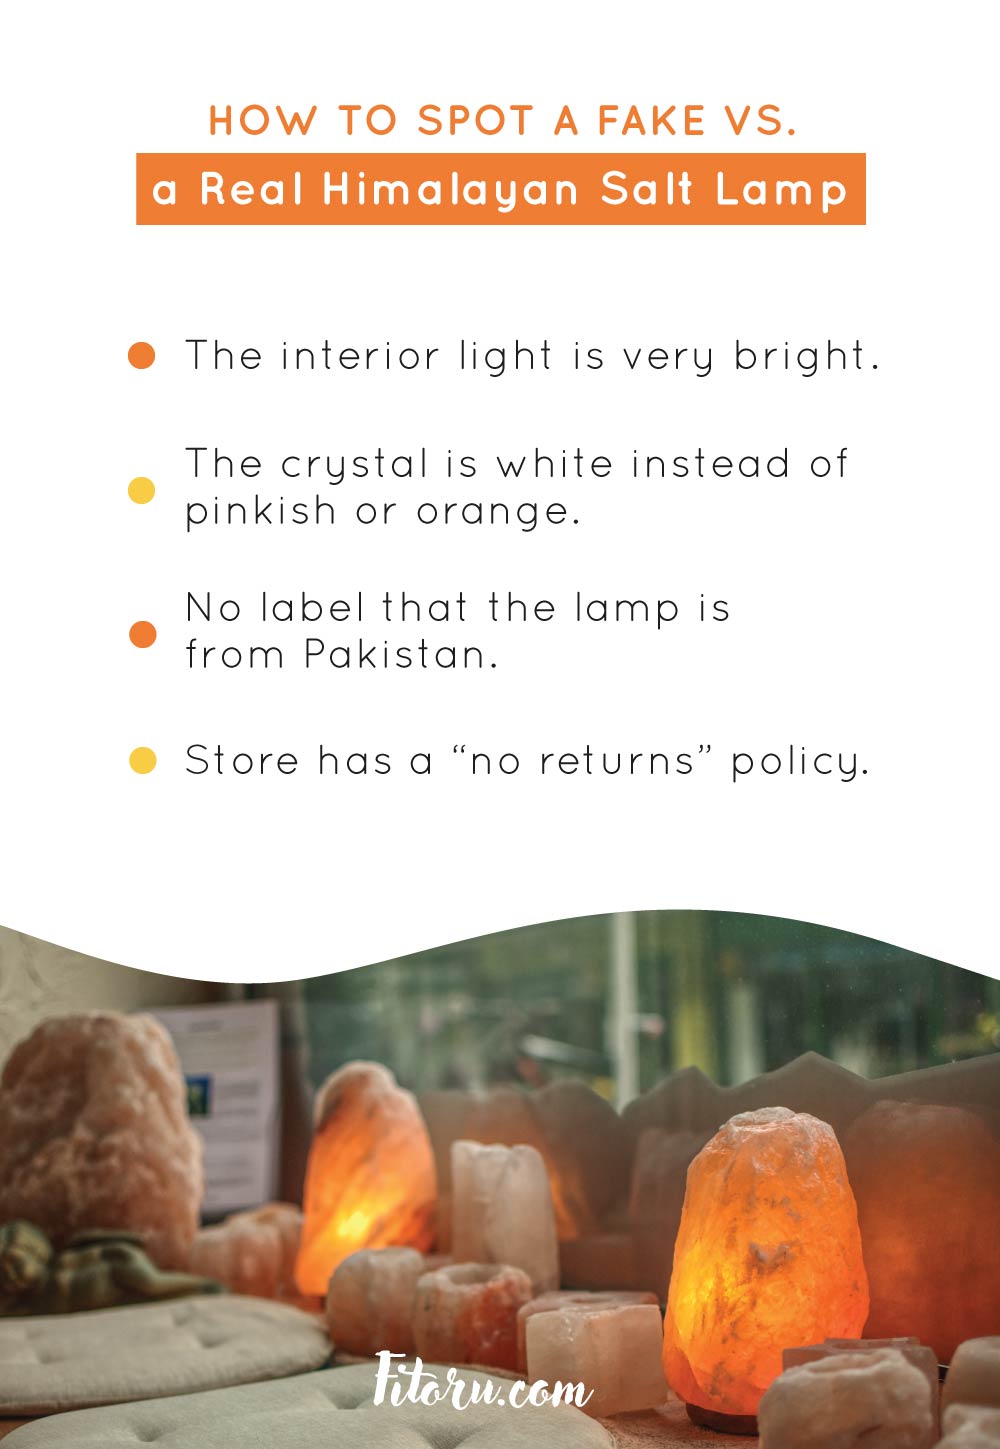 How to Spot a Fake vs. a Real Himalayan Salt Lamp